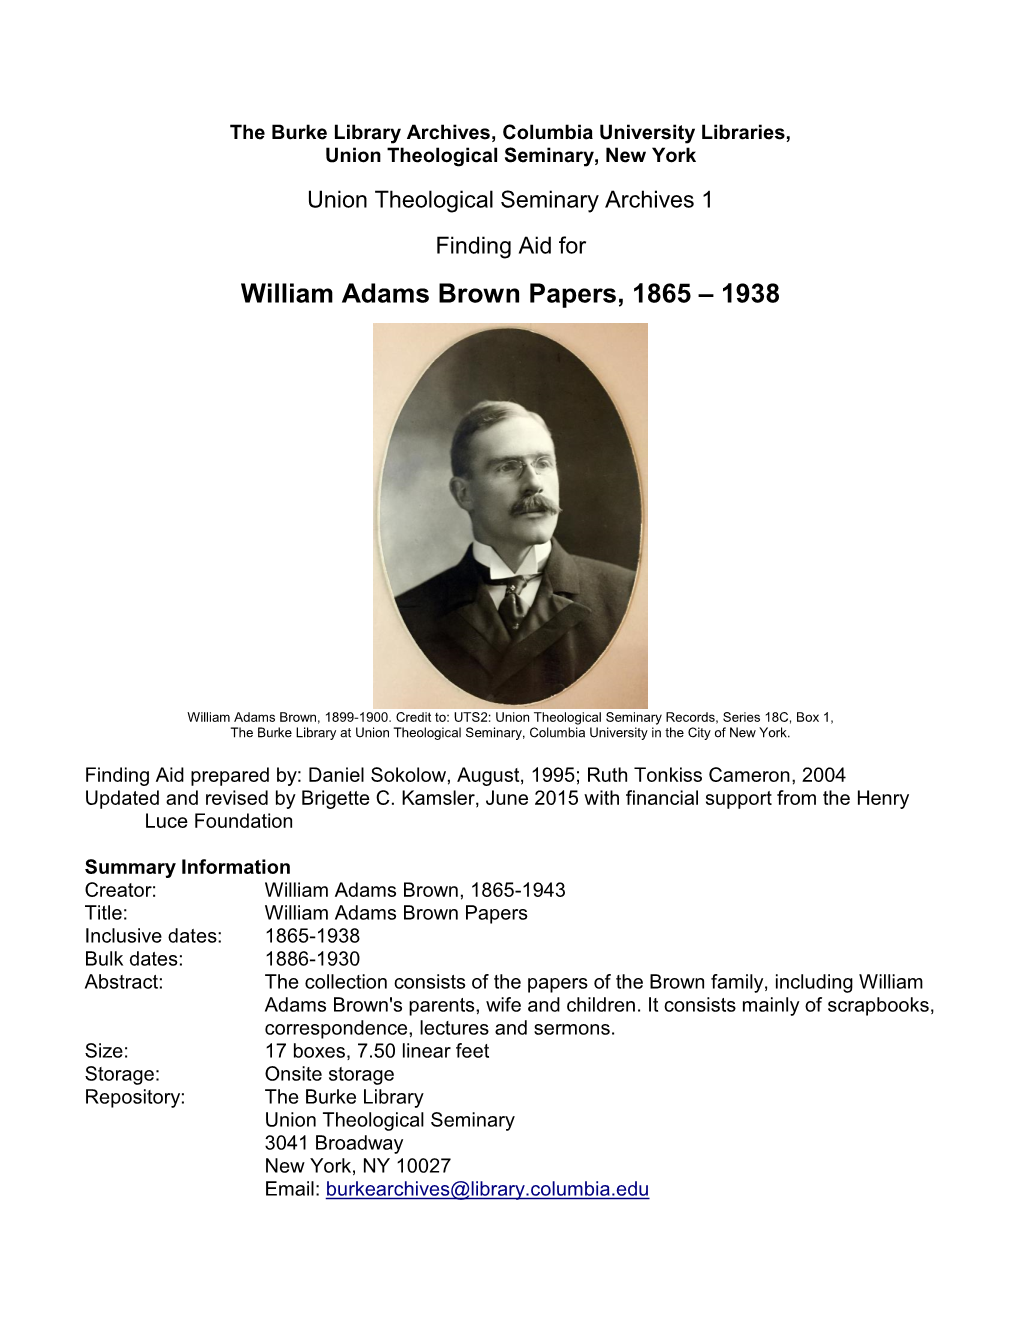 UTS: William Adams Brown Papers, 1865-1938